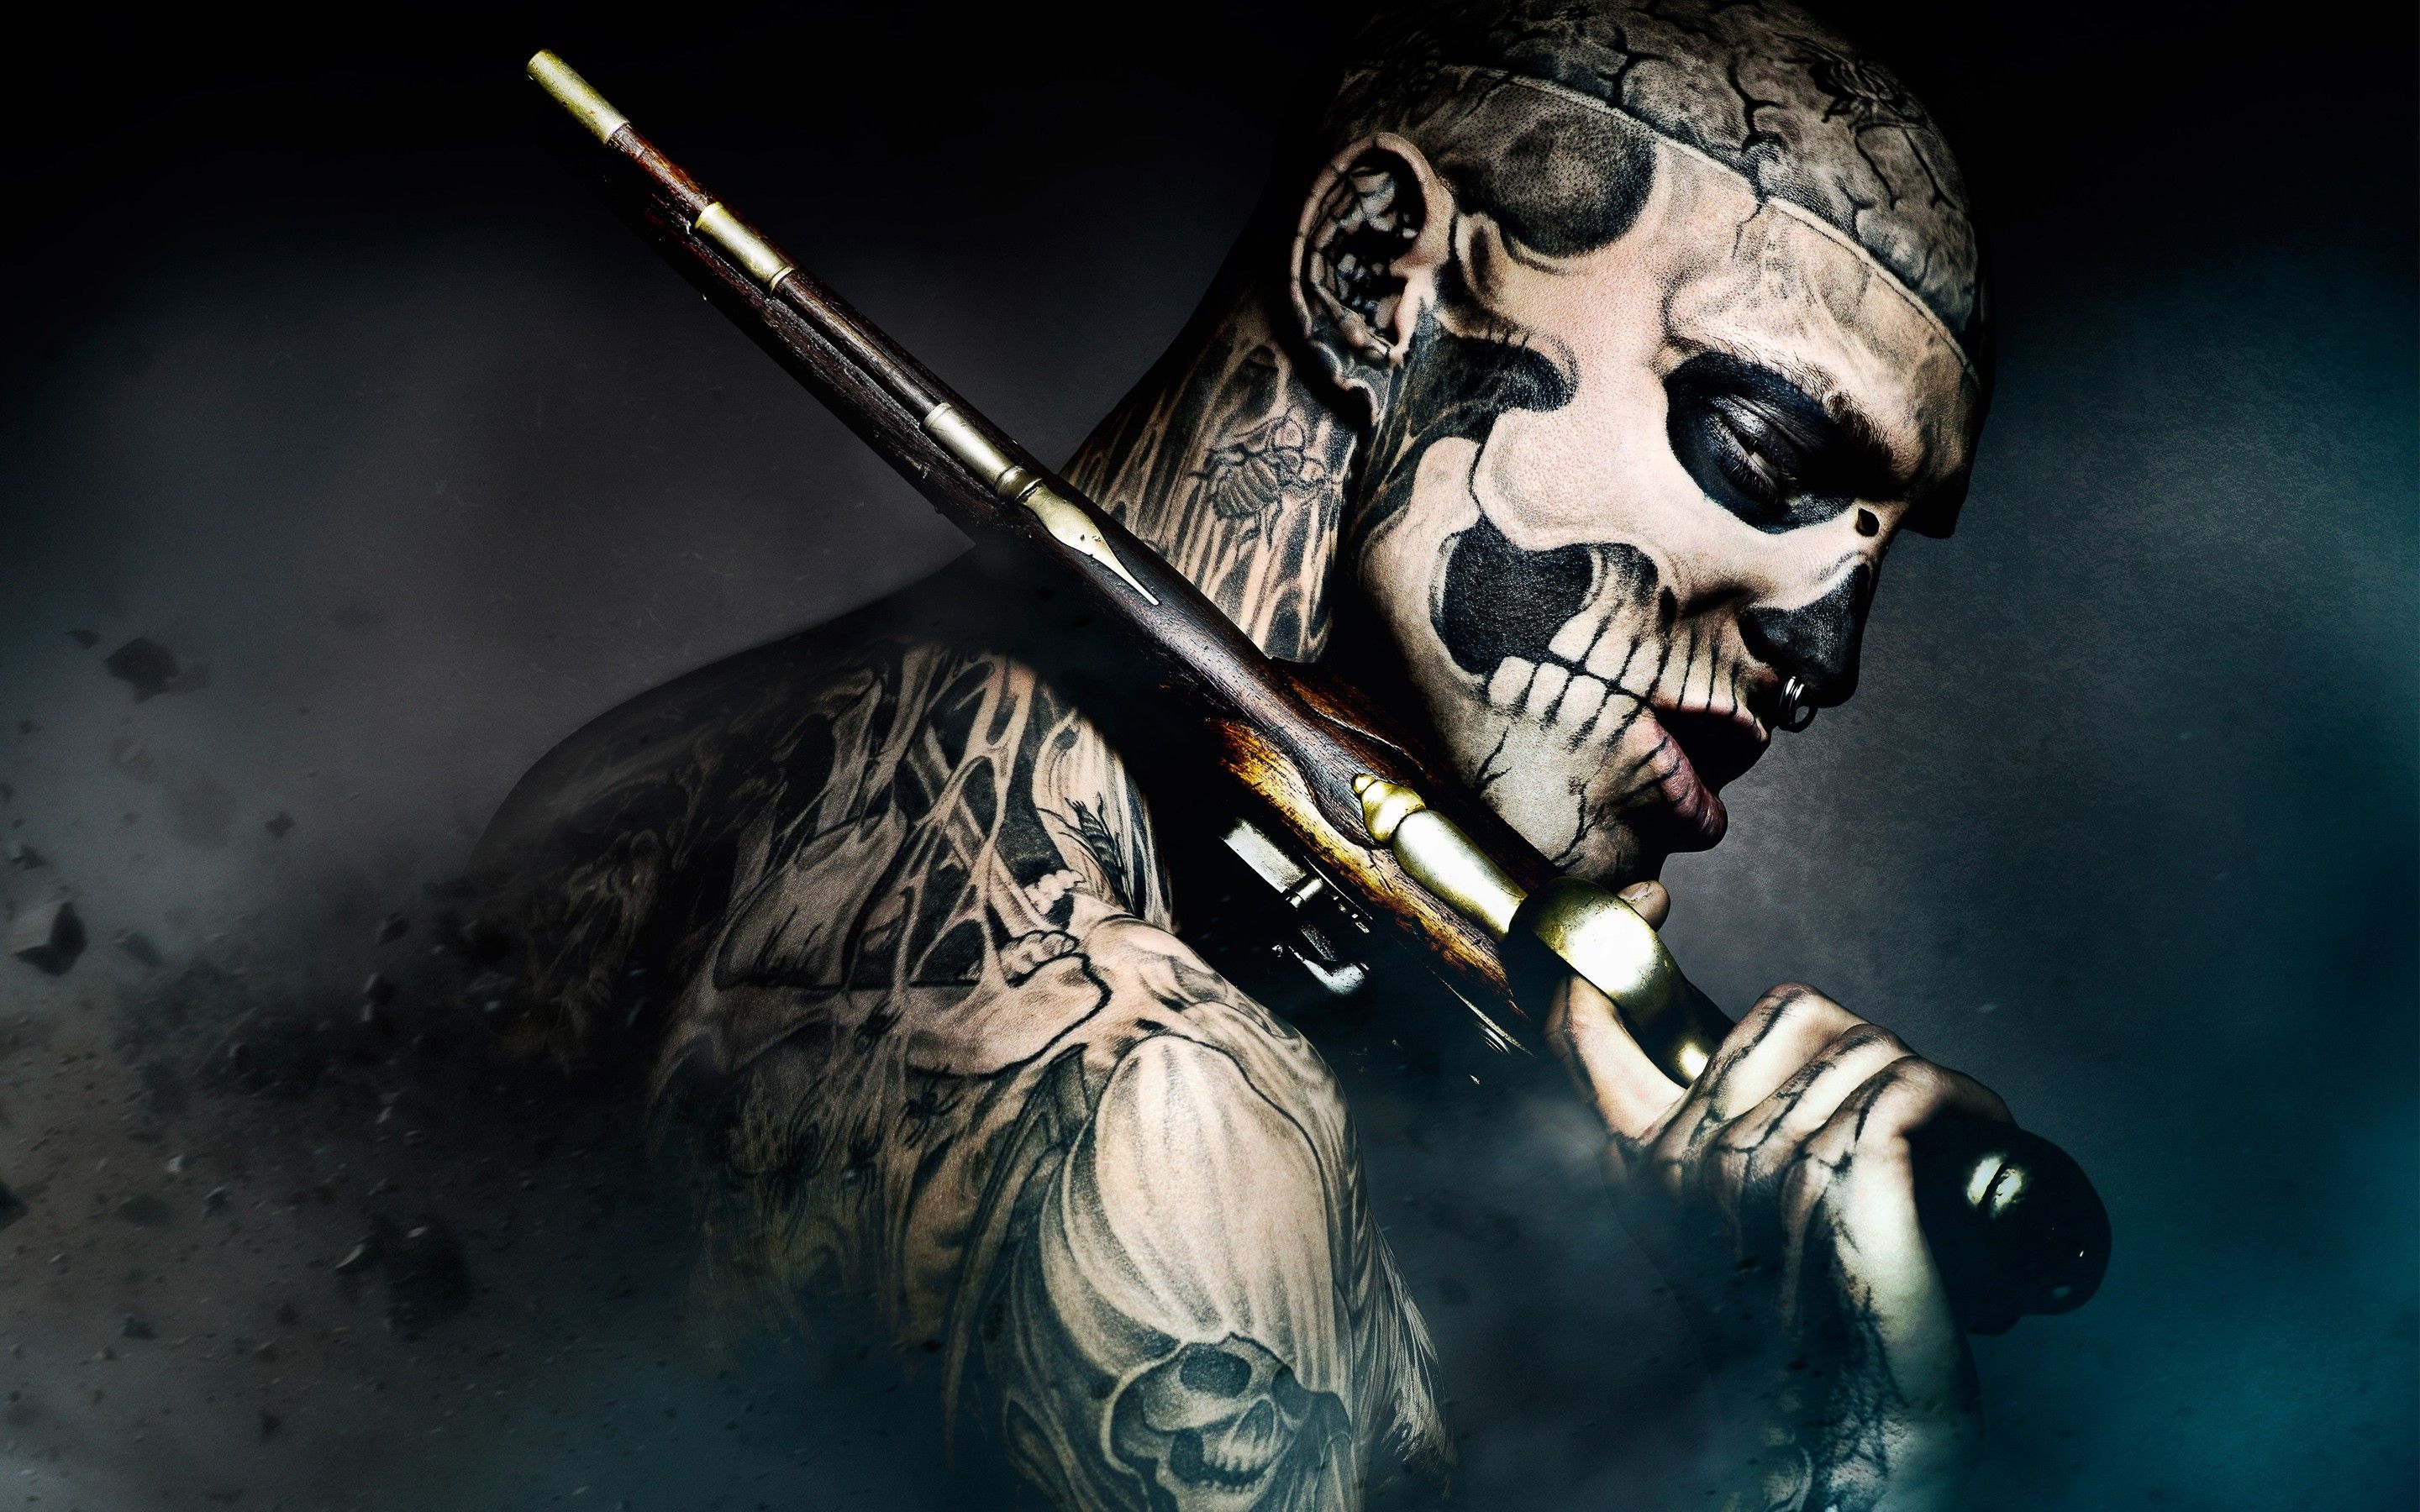 Tattoos, guns, stars, zombies, freak, cool story bro, tattoo